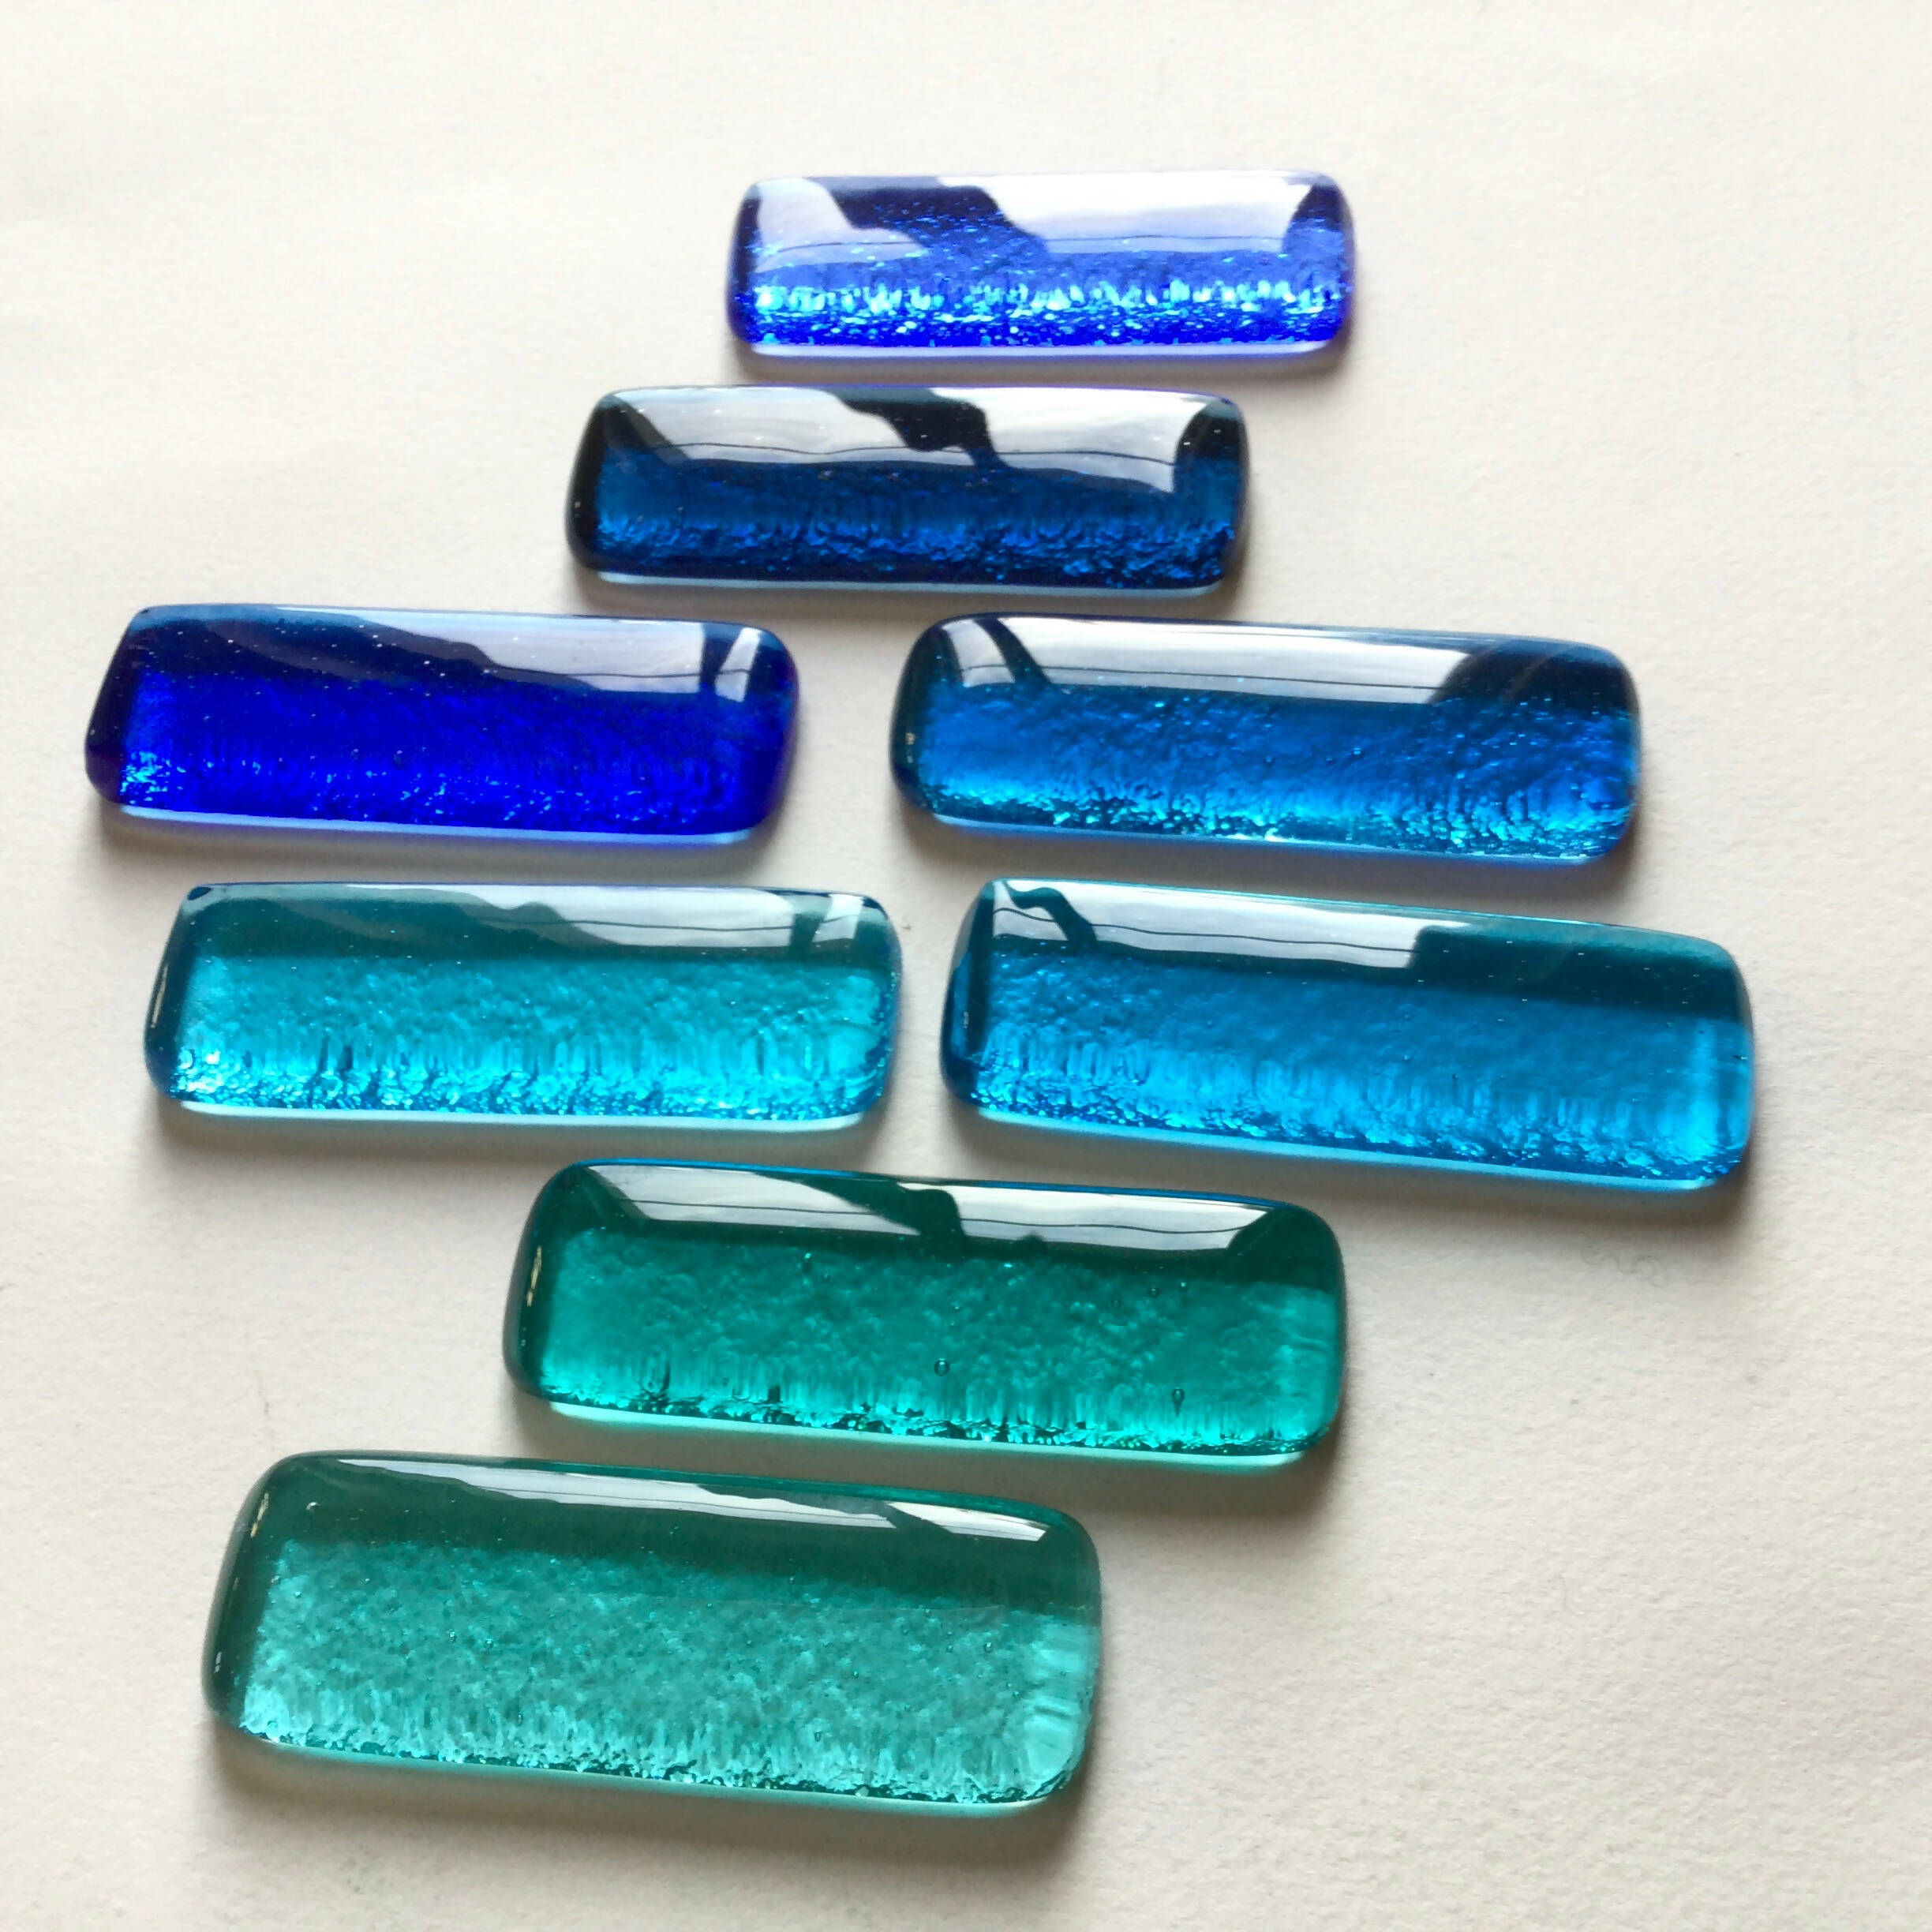 Coffret de 8 porte-couteaux barrettes Bleu-vert | EMPREINTES Paris | EMPREINTES Paris